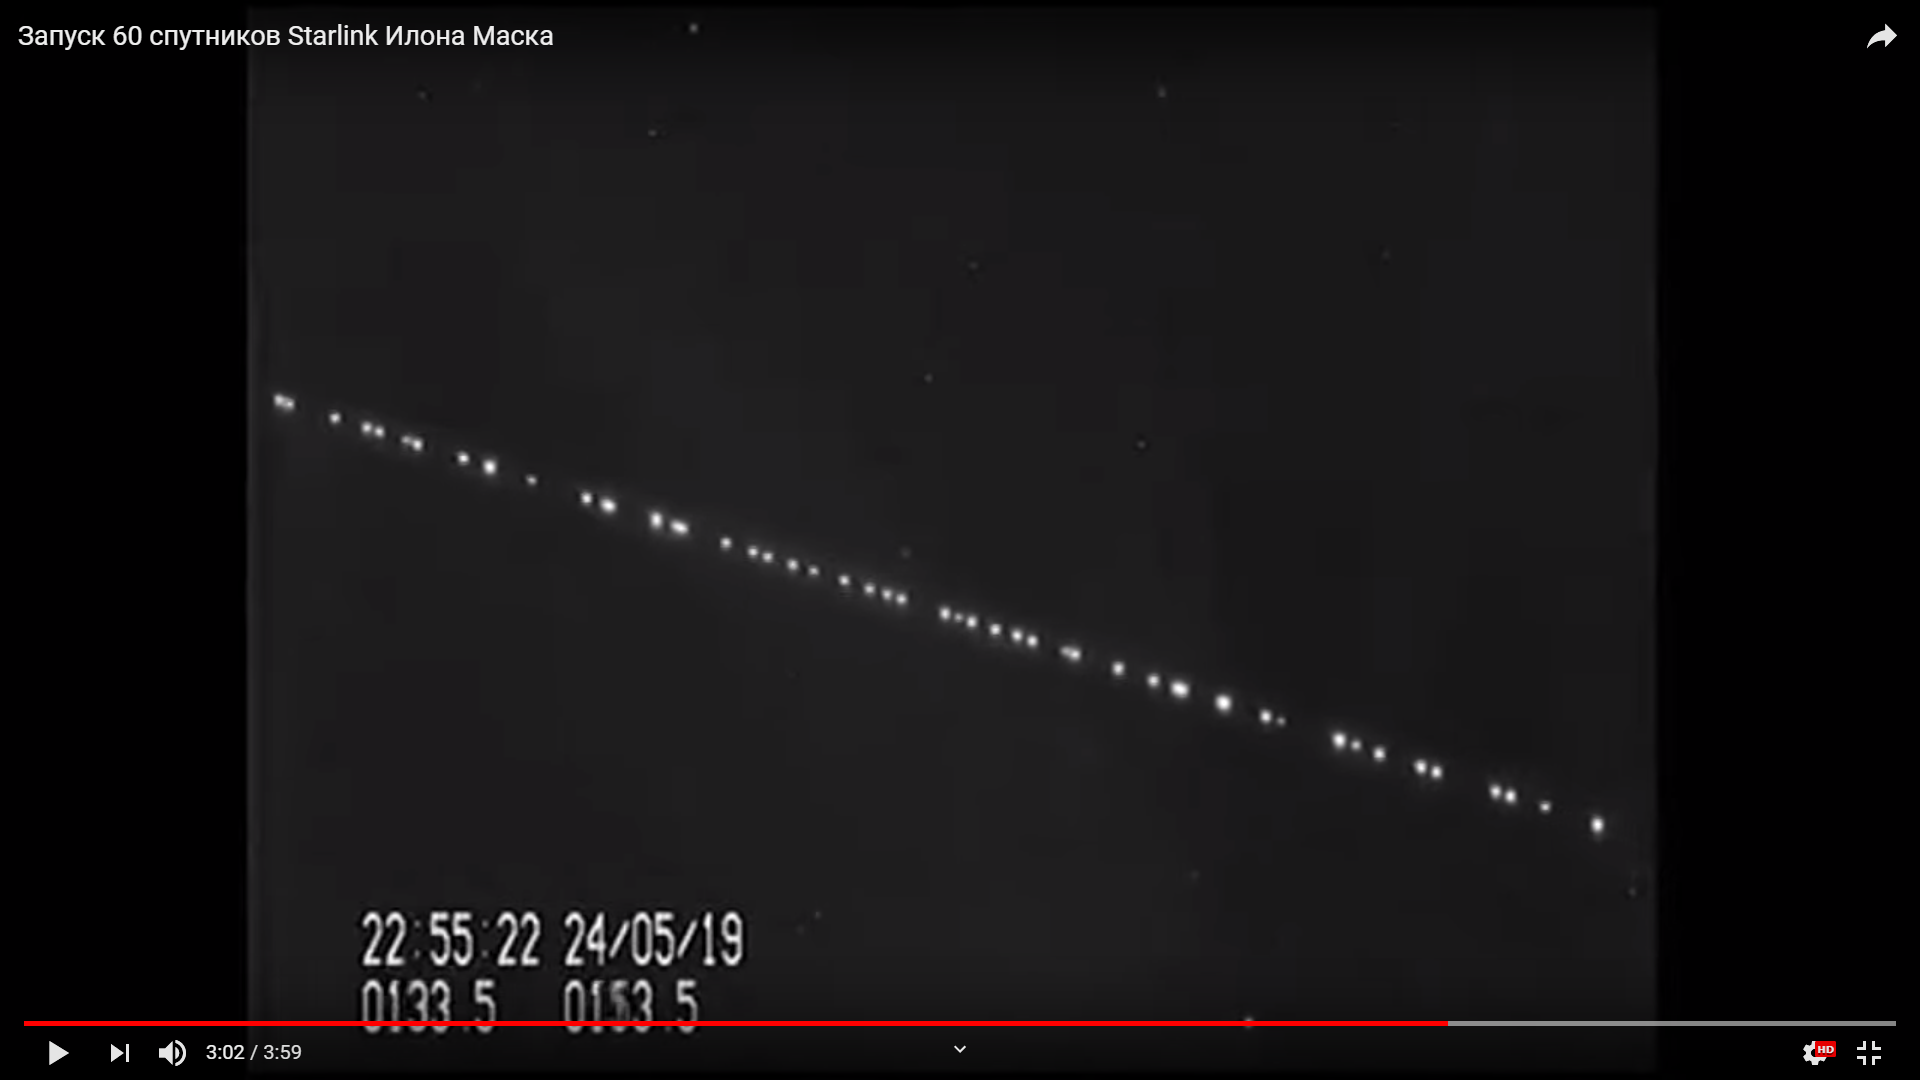 Цитата из видео «Запуск 60 спутников Starlink Илона Маска»